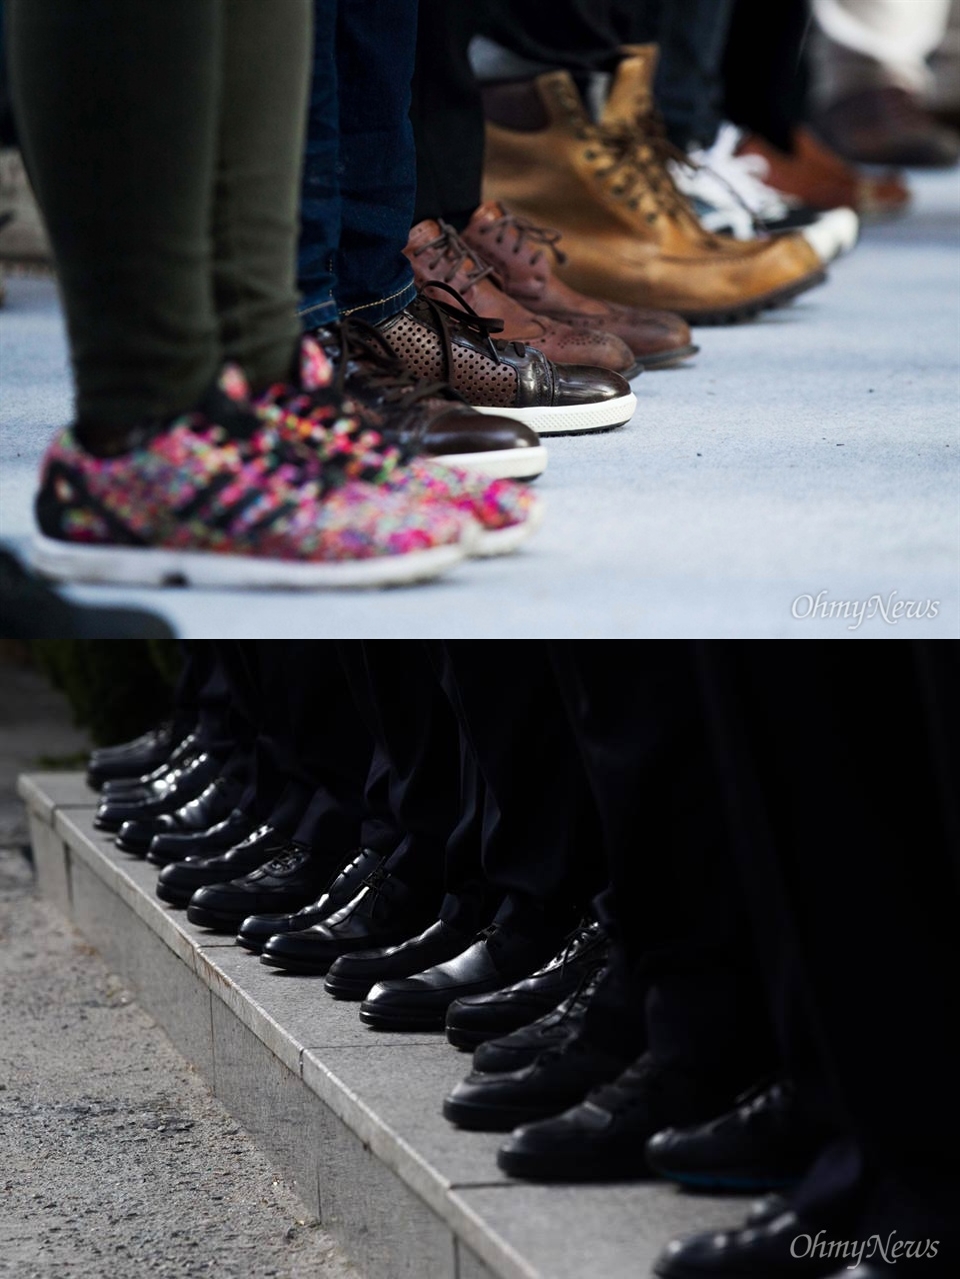 검정화 VS 국정화 두 사진은 역사교과서 국정화와 관련된 곳에서 촬영했다. 비밀티에프(TF) 사무실을 지키고 있던 경찰들의 구둣발과 국정화 반대 집회에 참가한 대학생들의 신발이다.
어떻게 역사를 보아야 하겠는가!